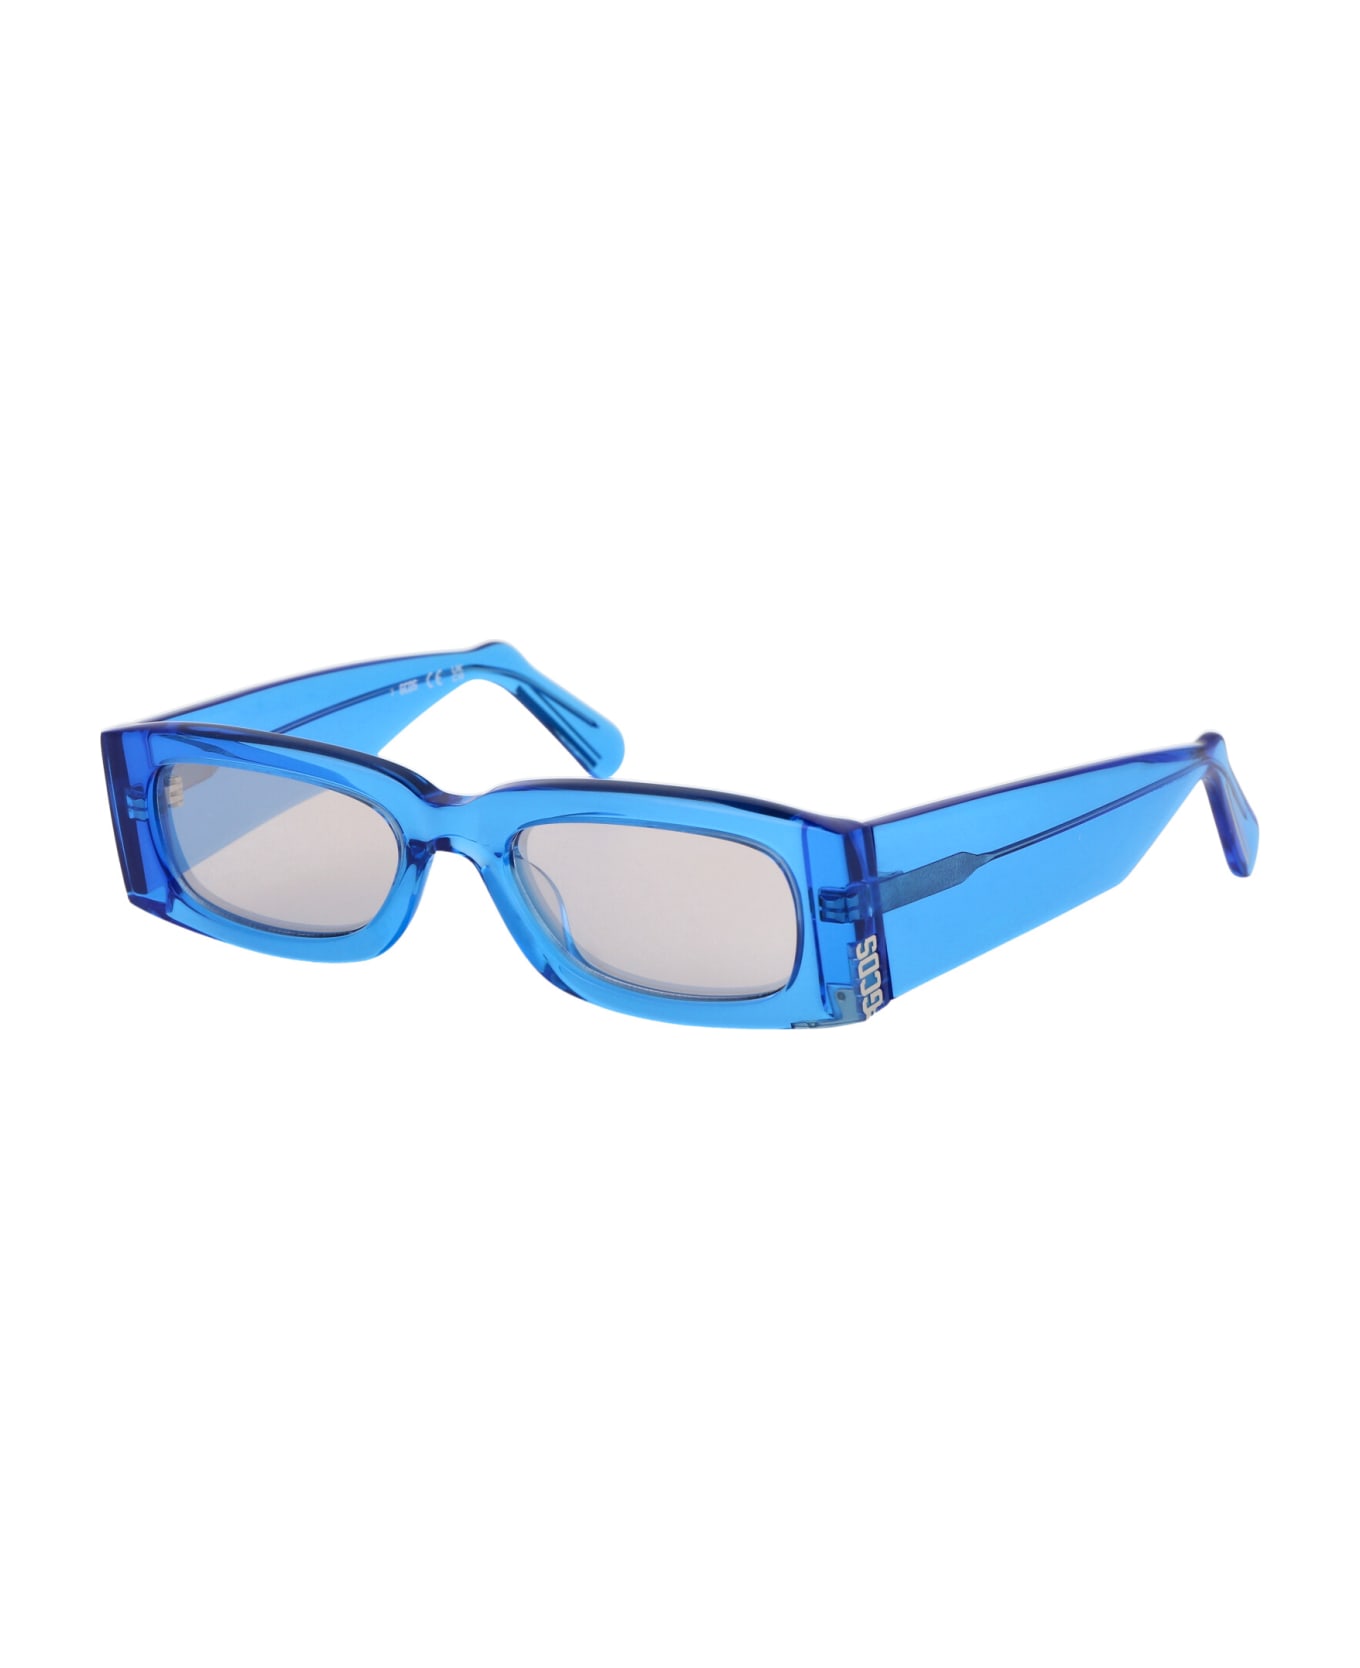 GCDS Gd0020 Sunglasses - 90L Blu Luc/Roviex Specchiato